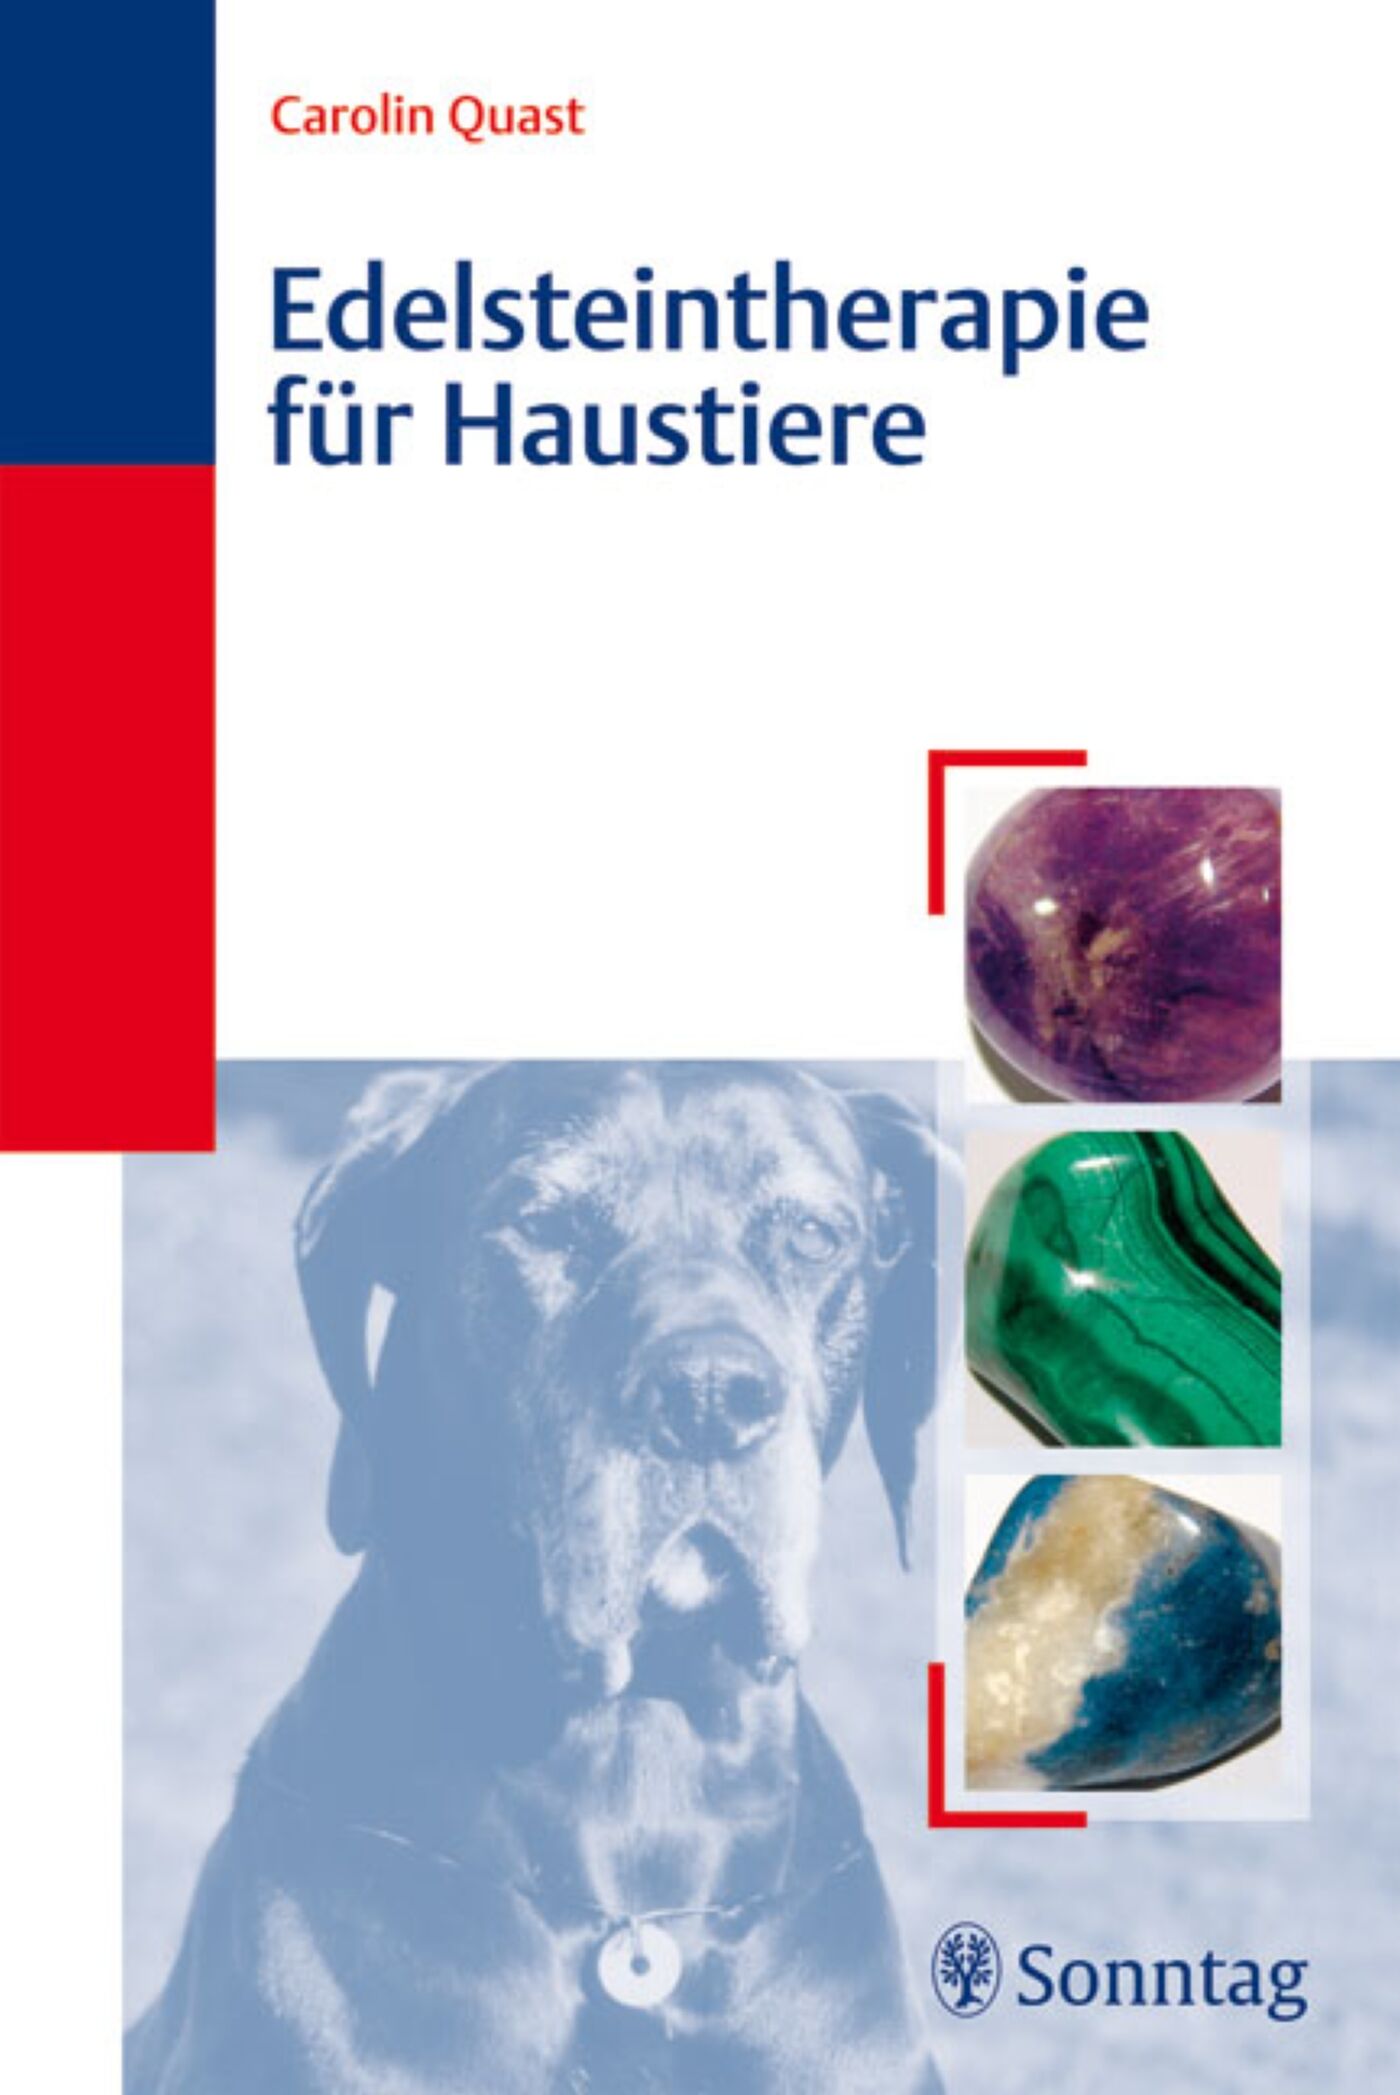 Edelsteintherapie für Haustiere, 9783830493976